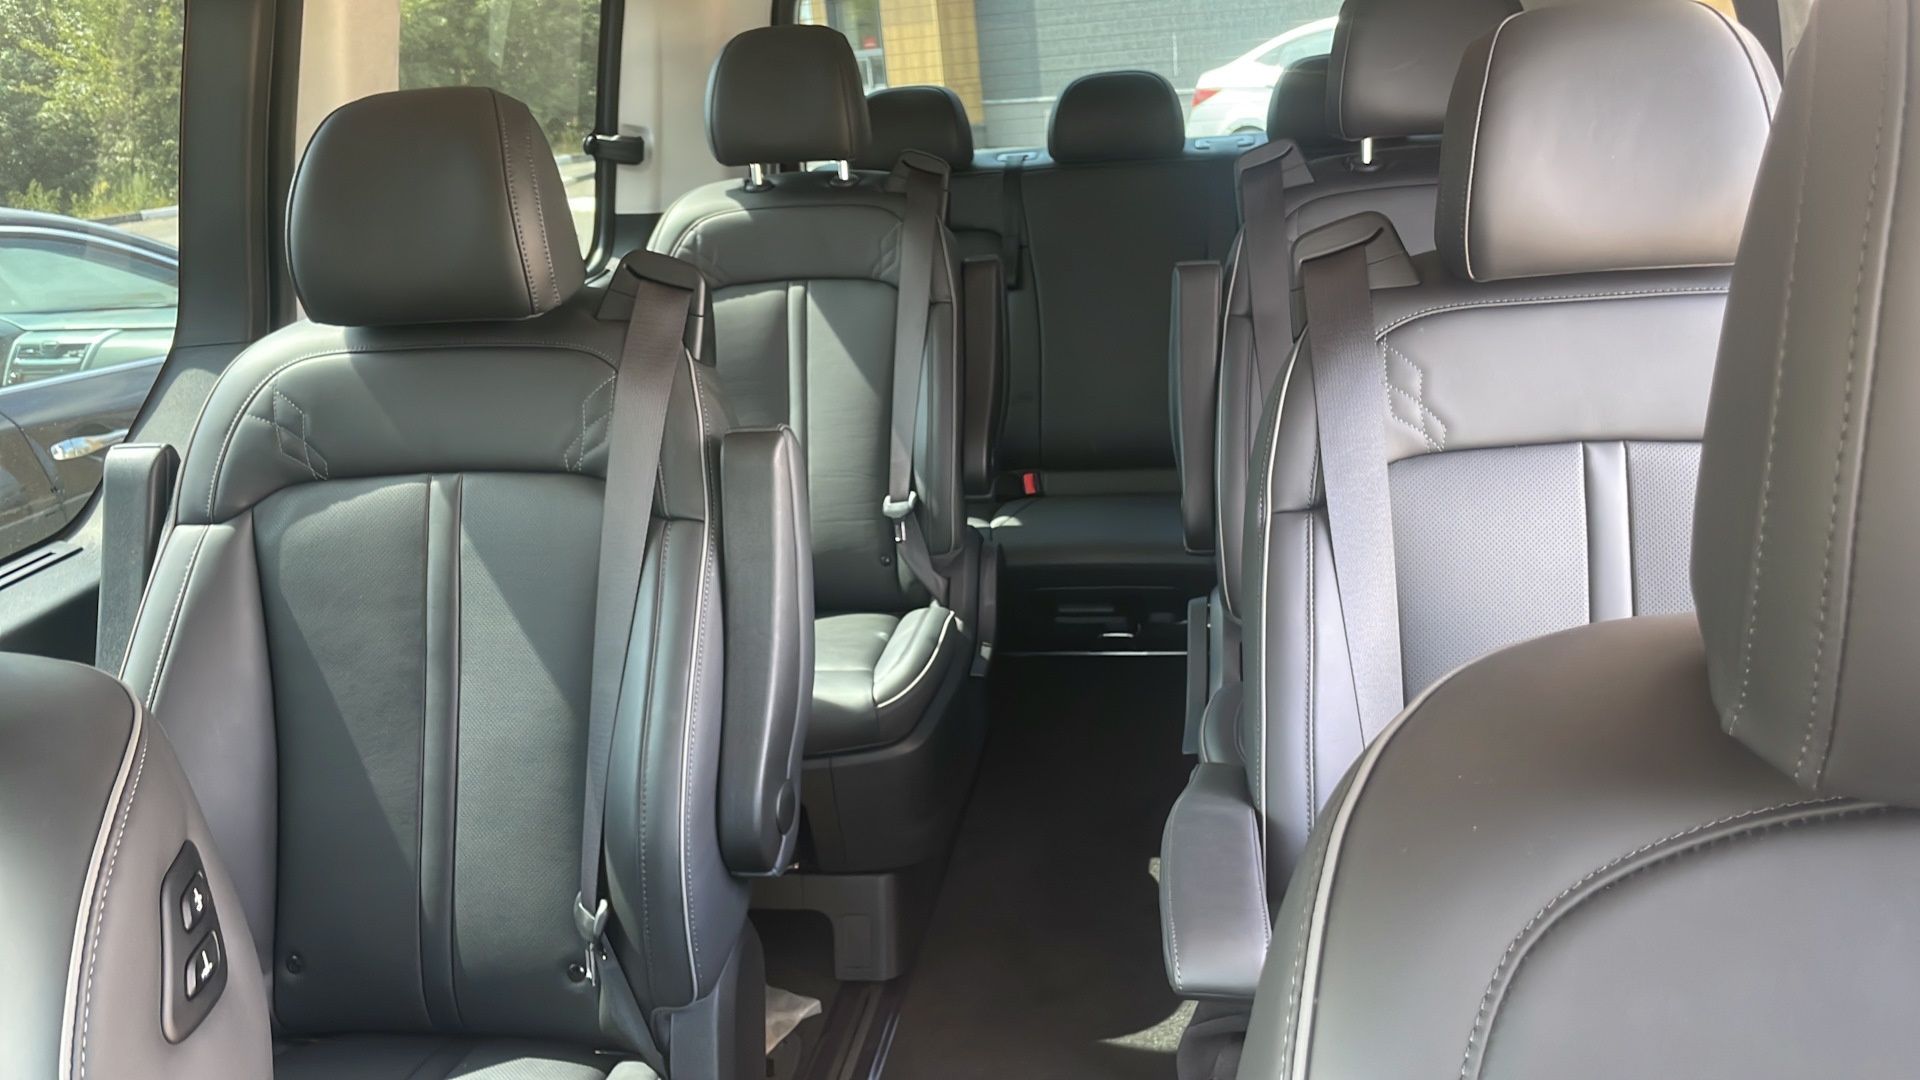 Hyundai Staria 2023г минивен с водителем, аренда прокат микроавтобус.